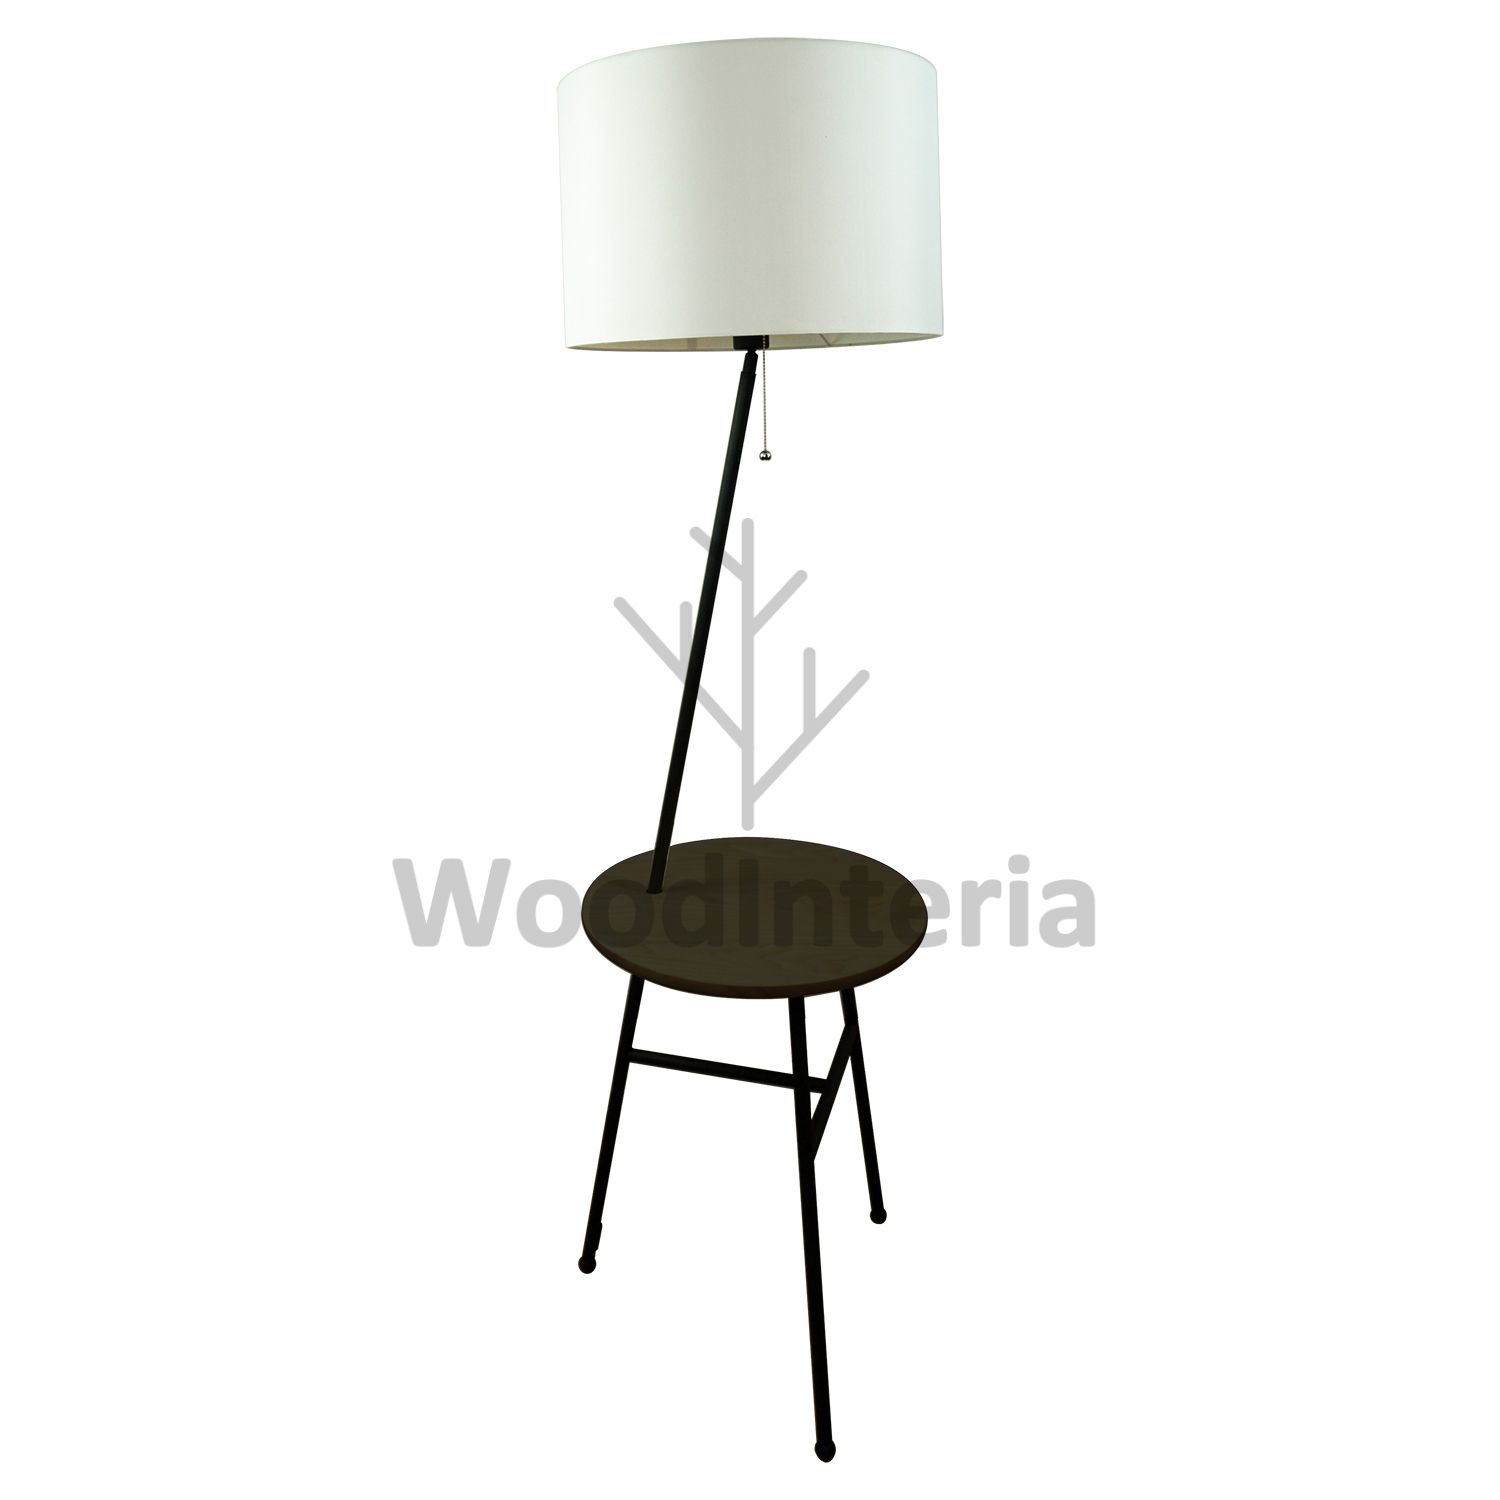 фото напольная лампа luminous table в скандинавском интерьере лофт эко | WoodInteria